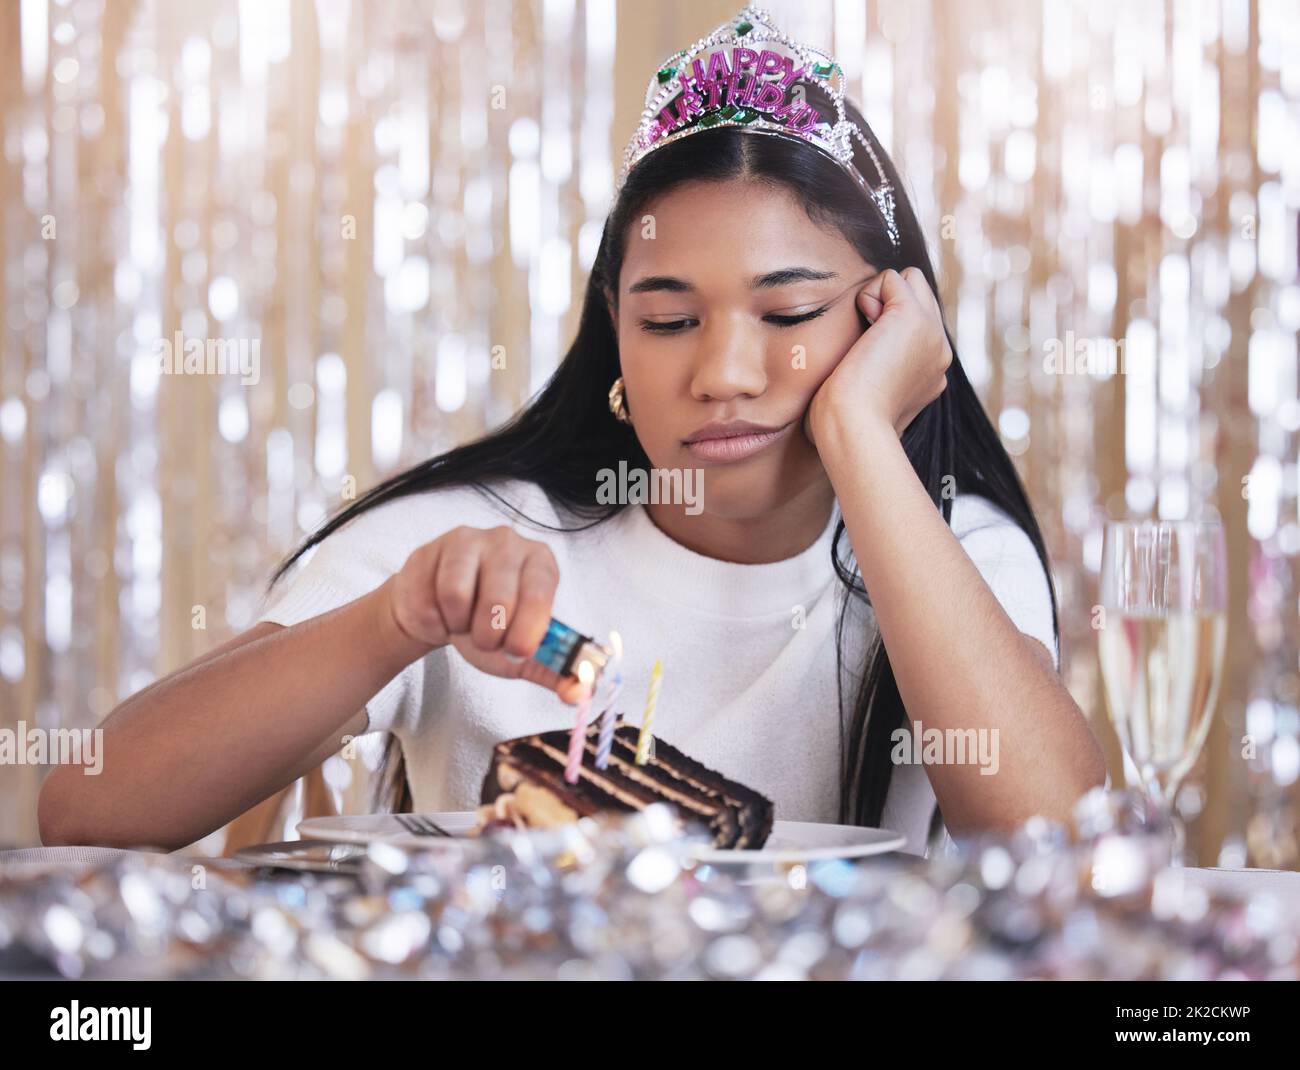 Traurige, depressive und wütende Frau bei der Geburtstagsfeier, während sie Kerze auf Kuchen anzündete. Einsame, depressive und frustrierte Frau, die auf einer Party sitzt Stockfoto